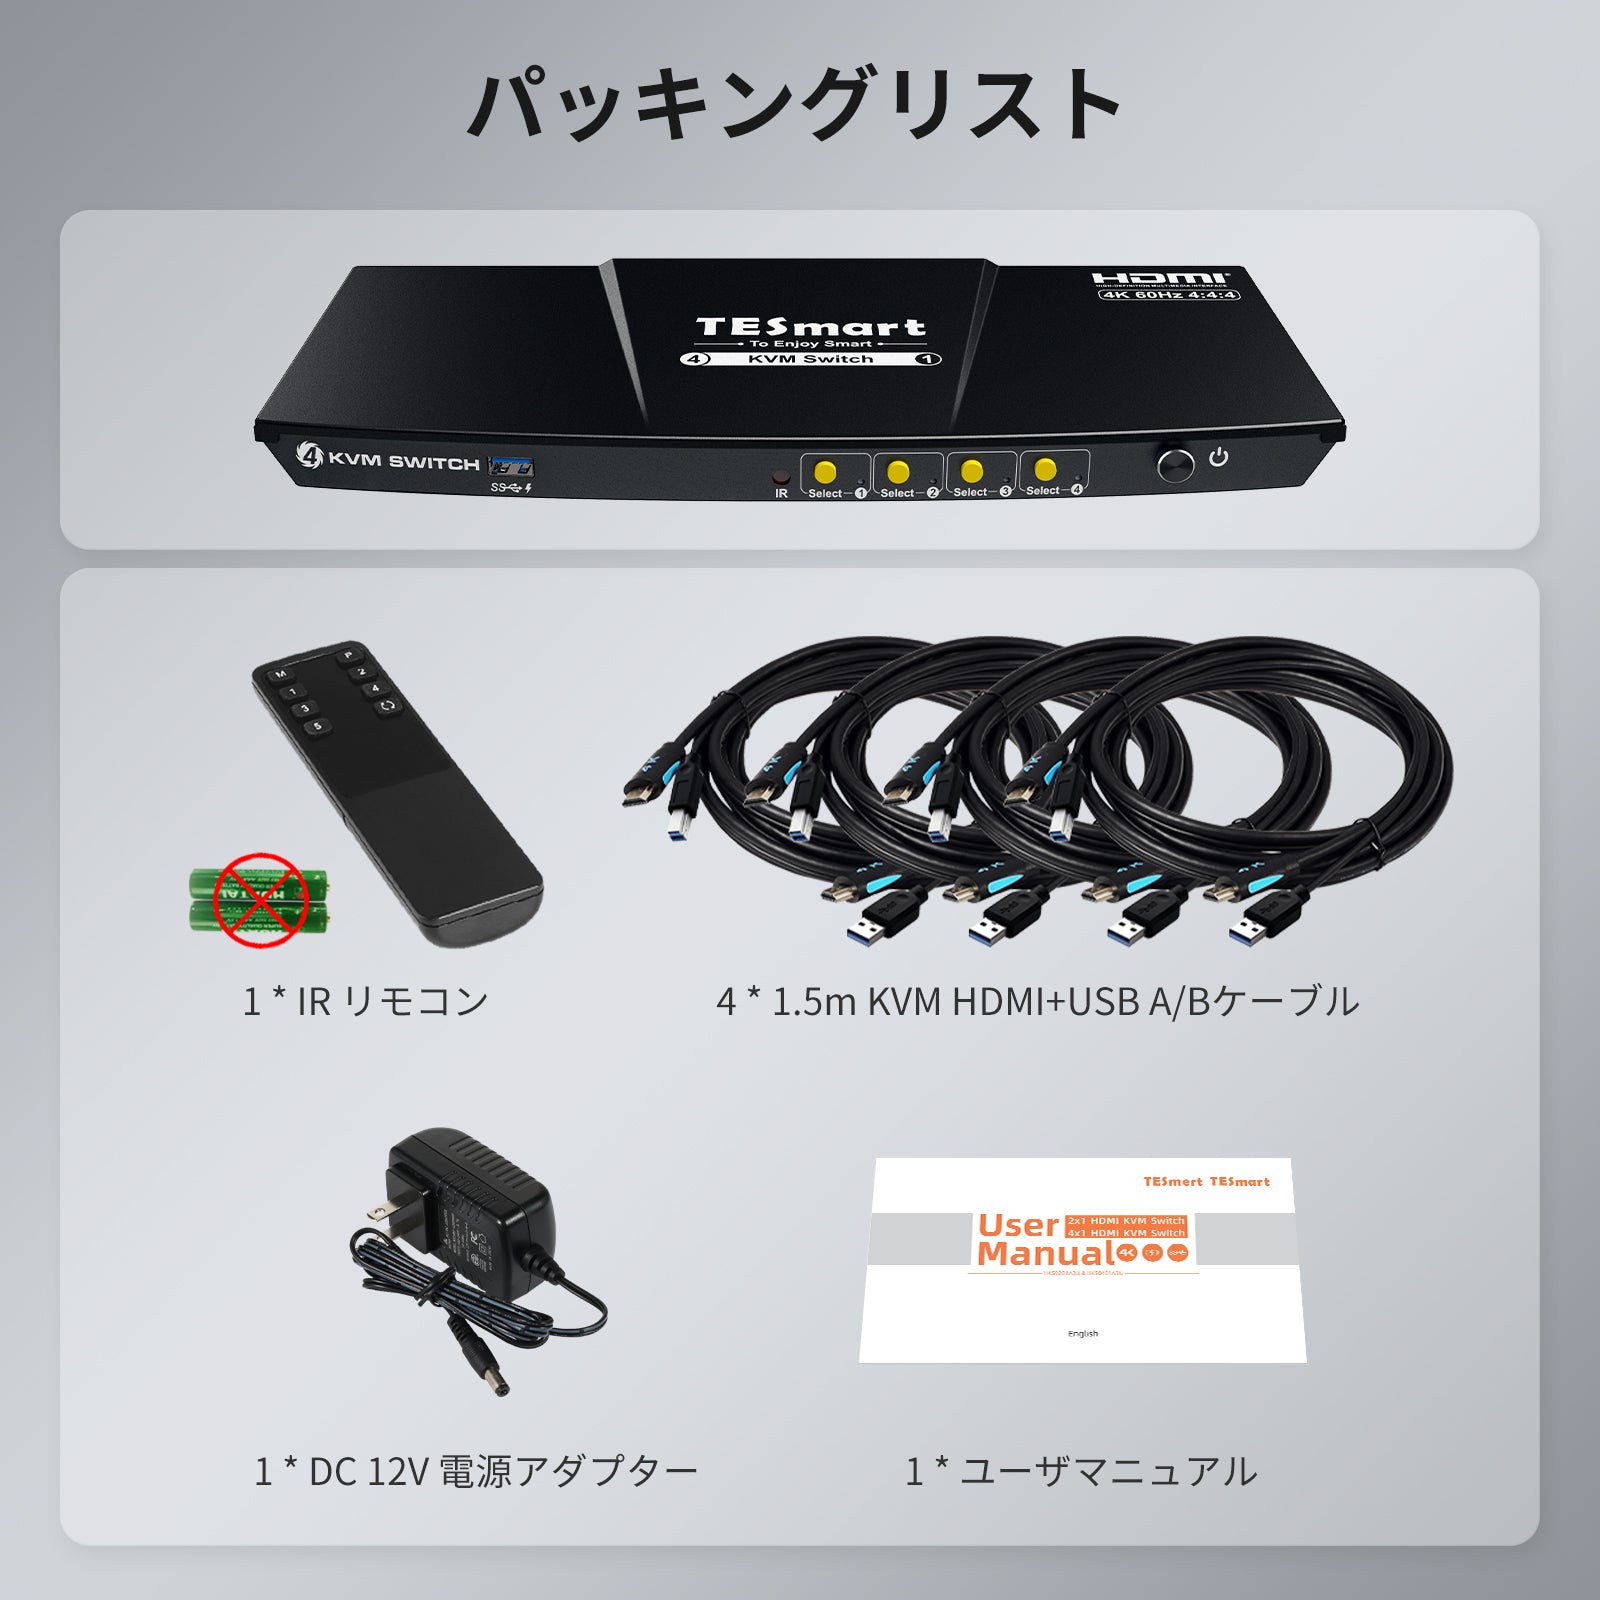 4 ポート KVM スイッチ HDMI 4K60Hz USB3.0 EDID付き | 4PC&amp;1モニター